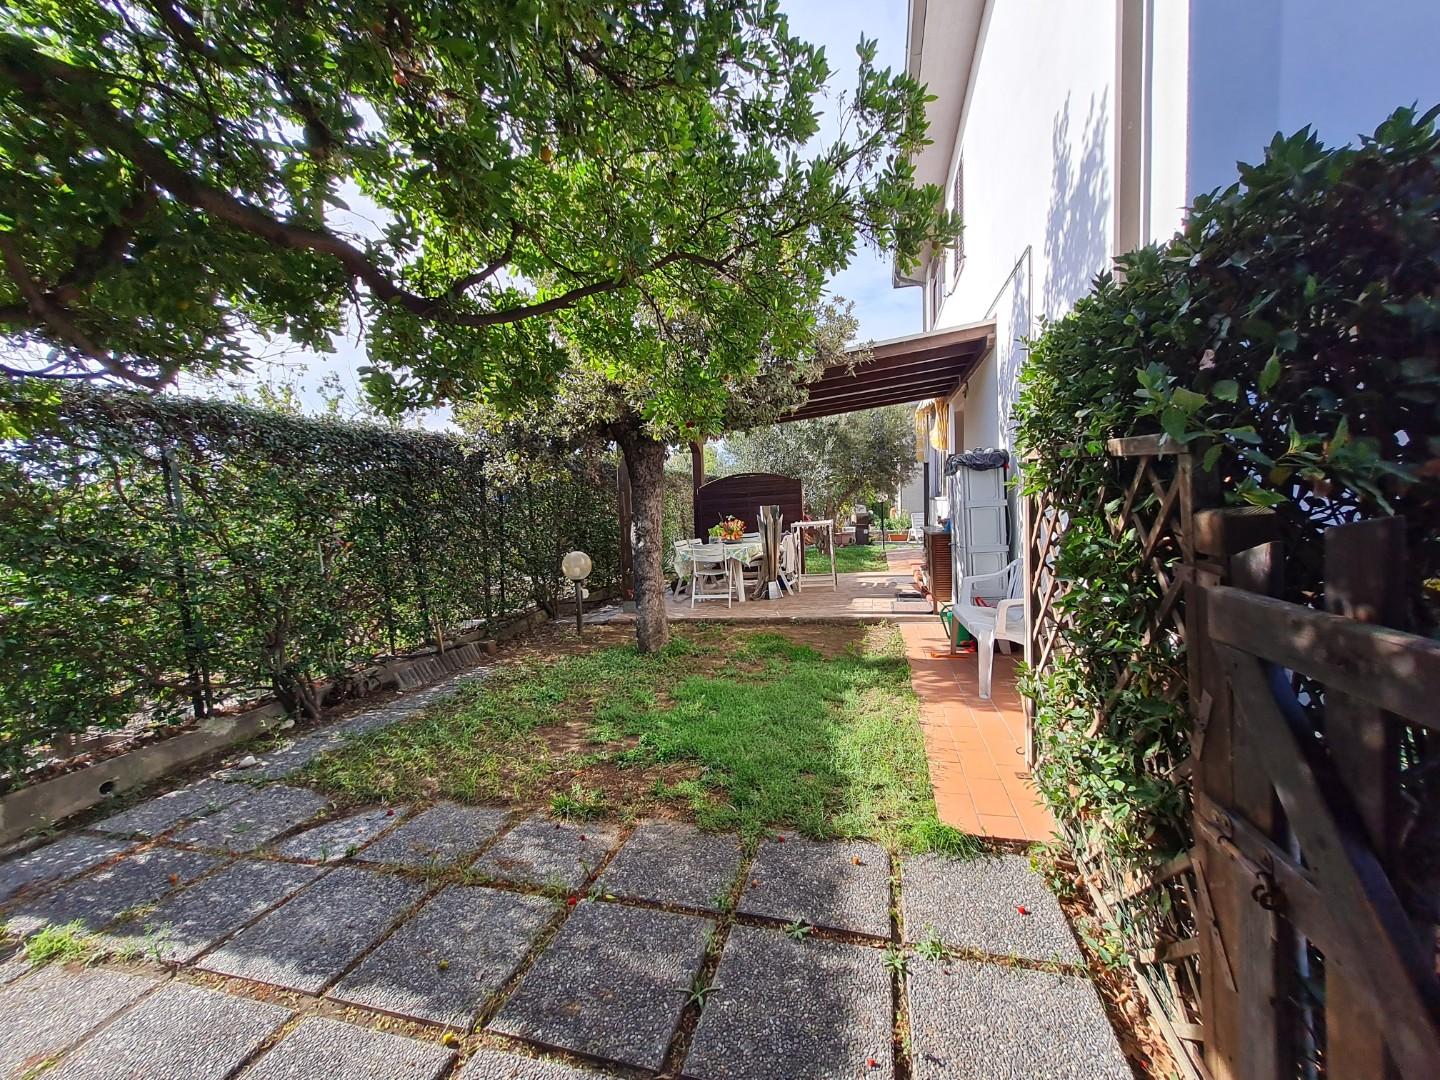 Villa Bifamiliare in vendita a Campiglia Marittima, 7 locali, prezzo € 280.000 | PortaleAgenzieImmobiliari.it